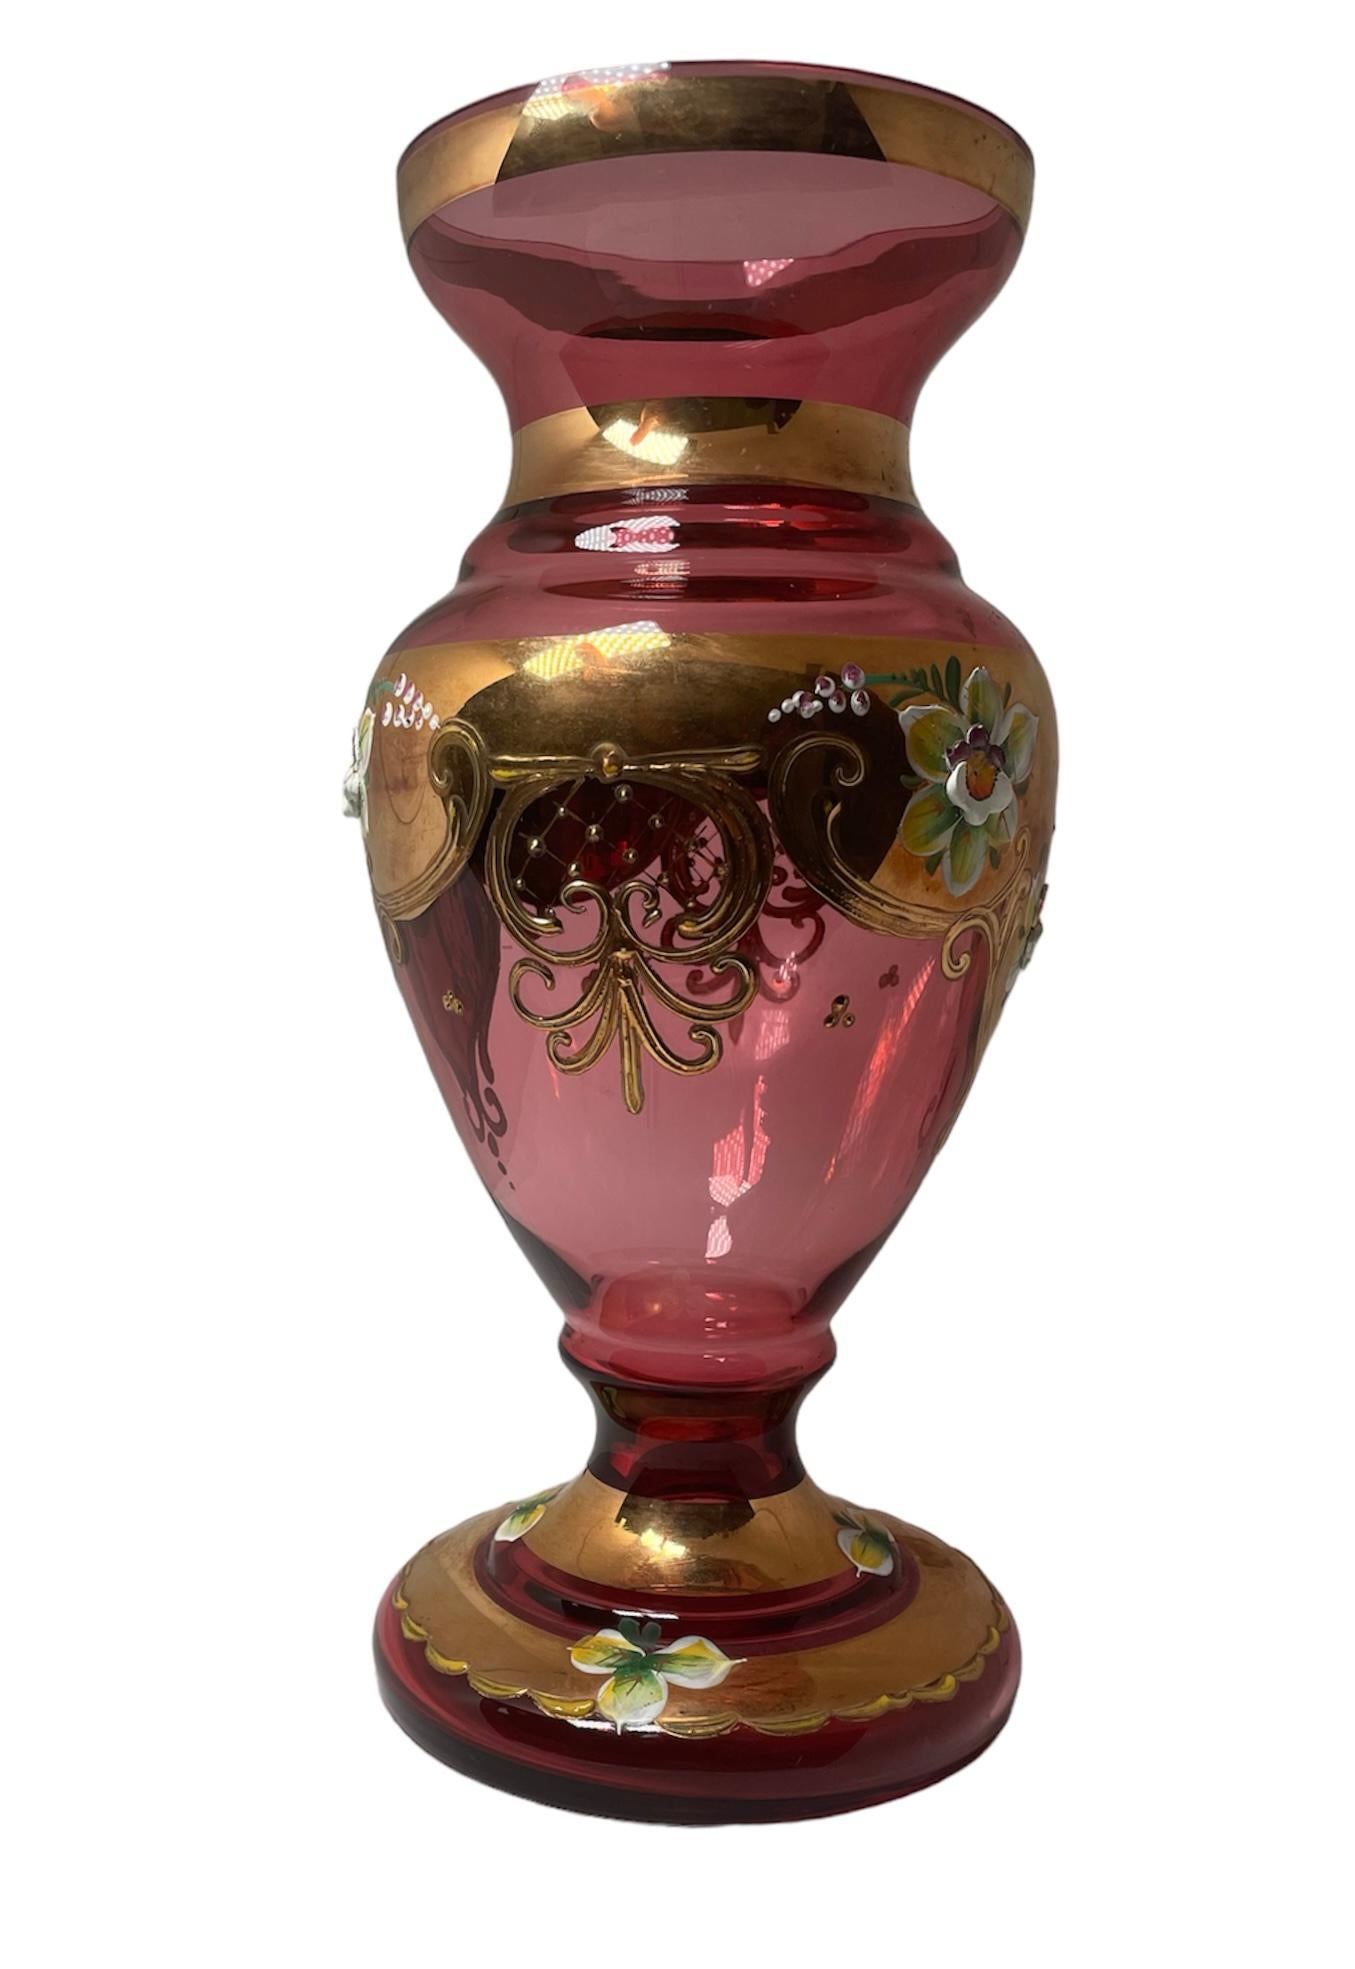 Dies ist eine böhmische Vase aus vergoldetem Glas. Es zeigt eine helle Preiselbeere Farbe Glasvase mit handgemalten Emaille großen Blumen und vergoldeten Rollen verziert. Der runde Sockel ist mit einer vergoldeten Girlande mit Emailleblättern